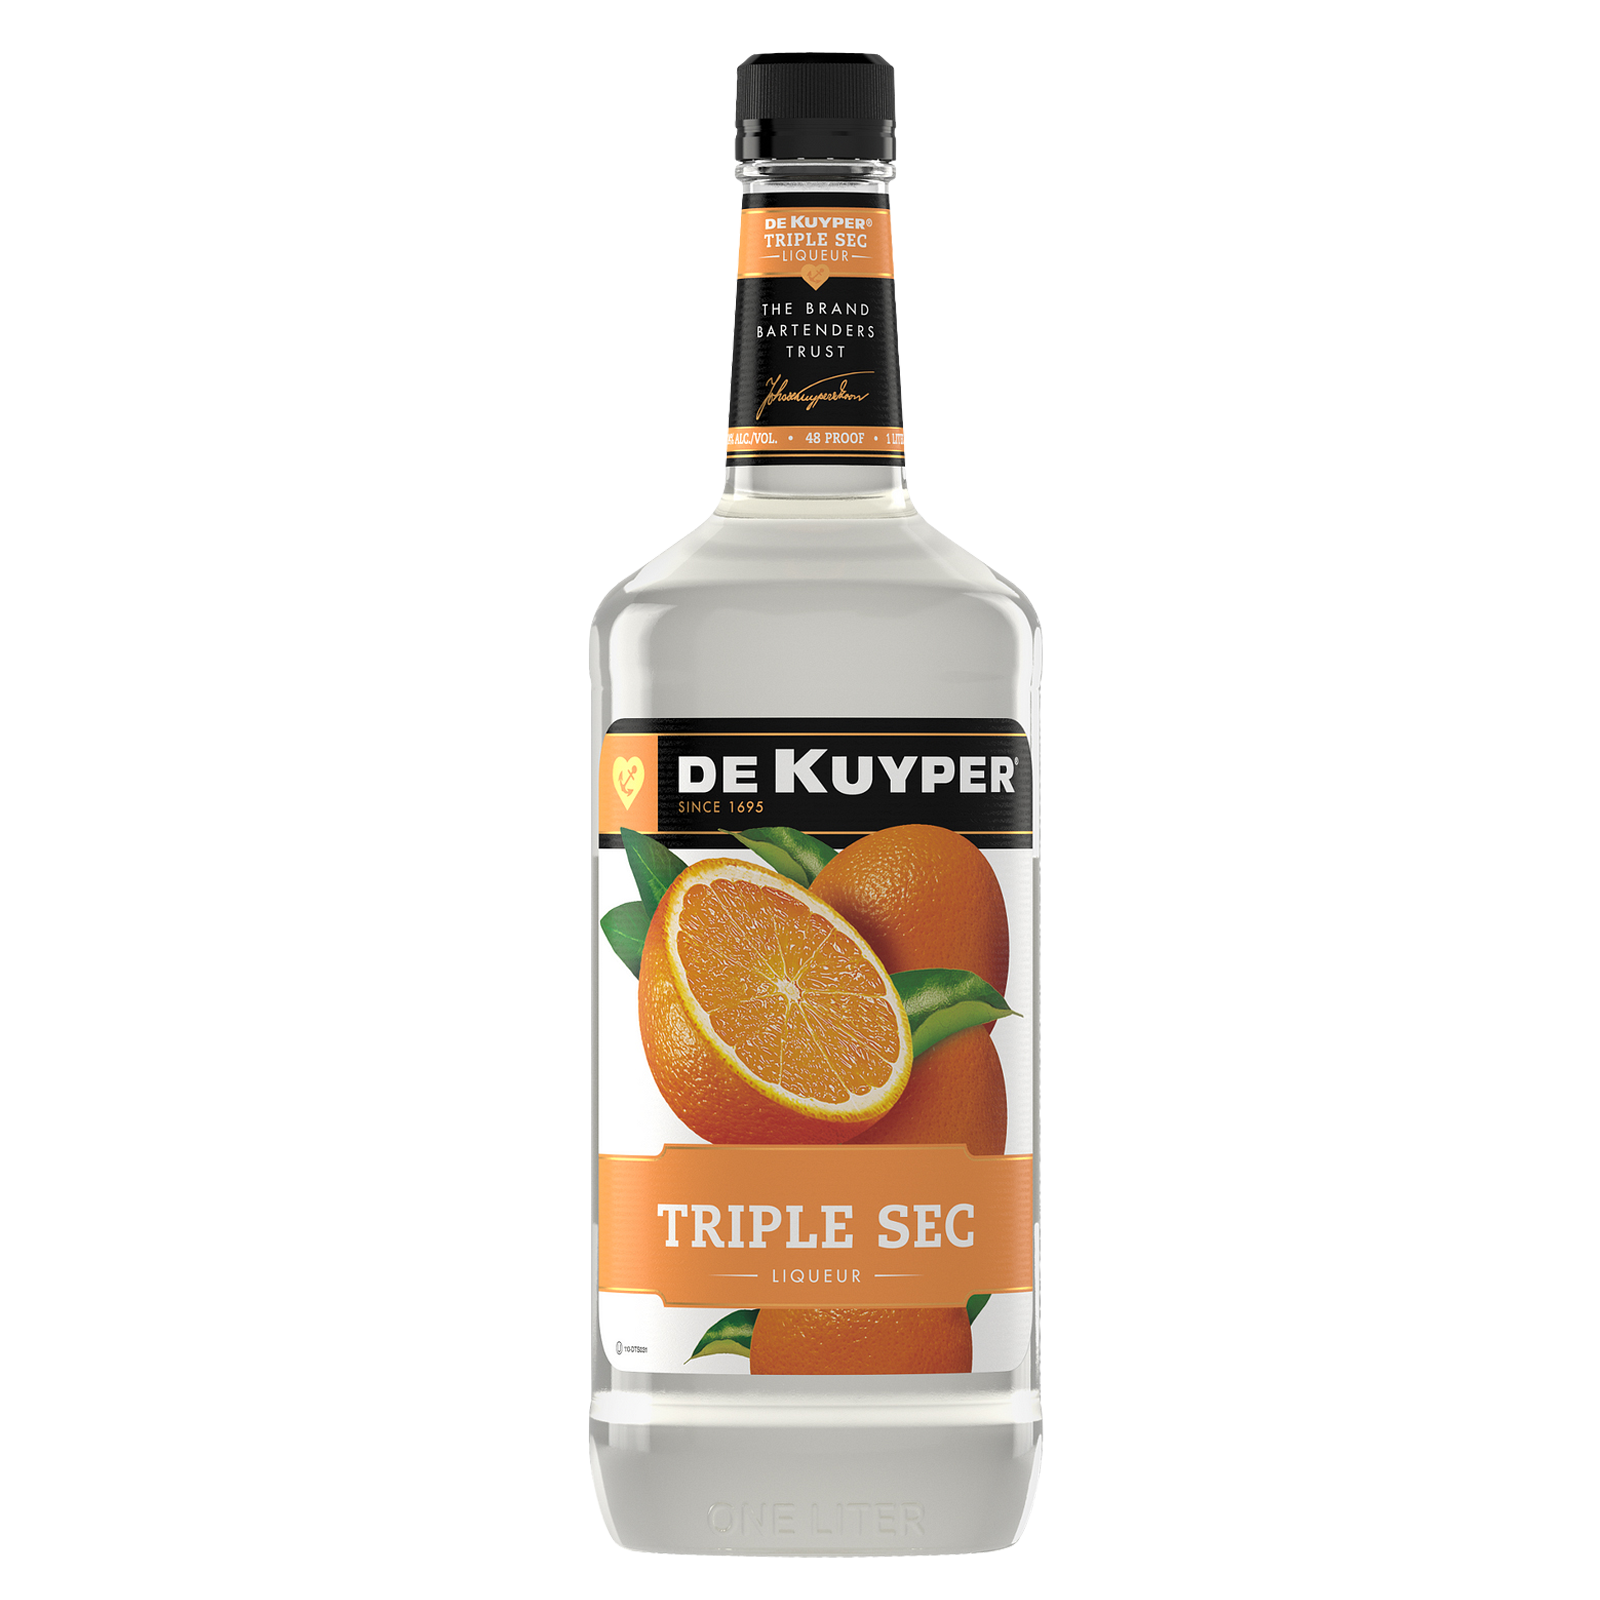 Dekuyper Triple Sec Liqueur 1L (48 proof)